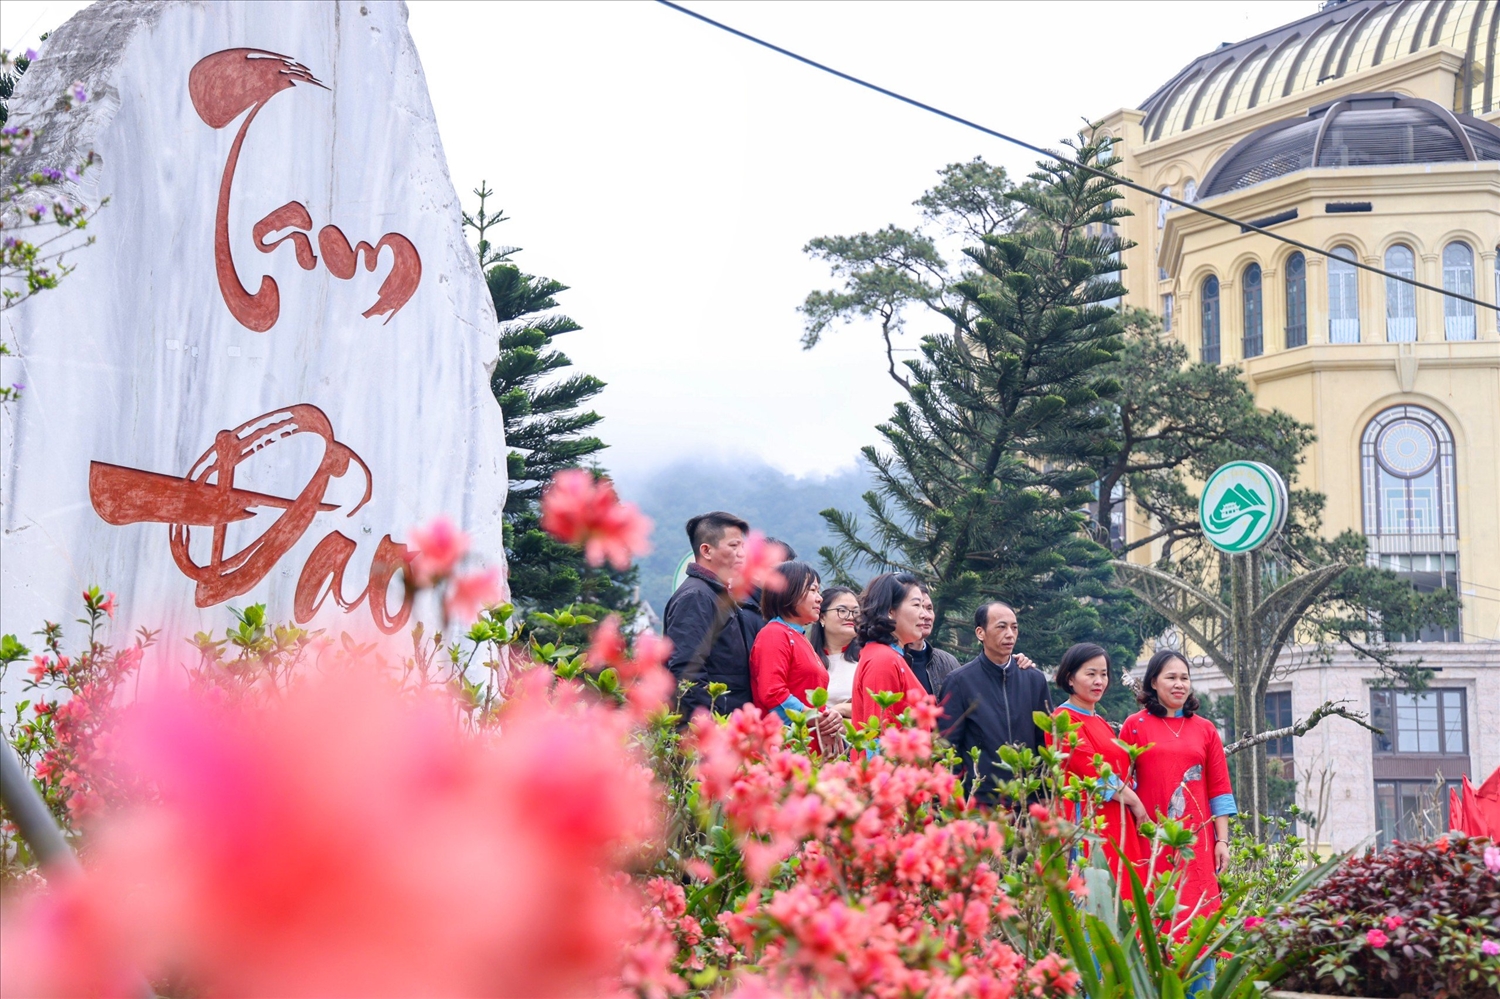 Huyện Tam Đảo đang thúc đẩy các hoạt động giao lưu hợp tác về văn hóa, du lịch, đầu tư, thương mại, bảo tồn và phát huy giá trị cây hoa đỗ quyên.